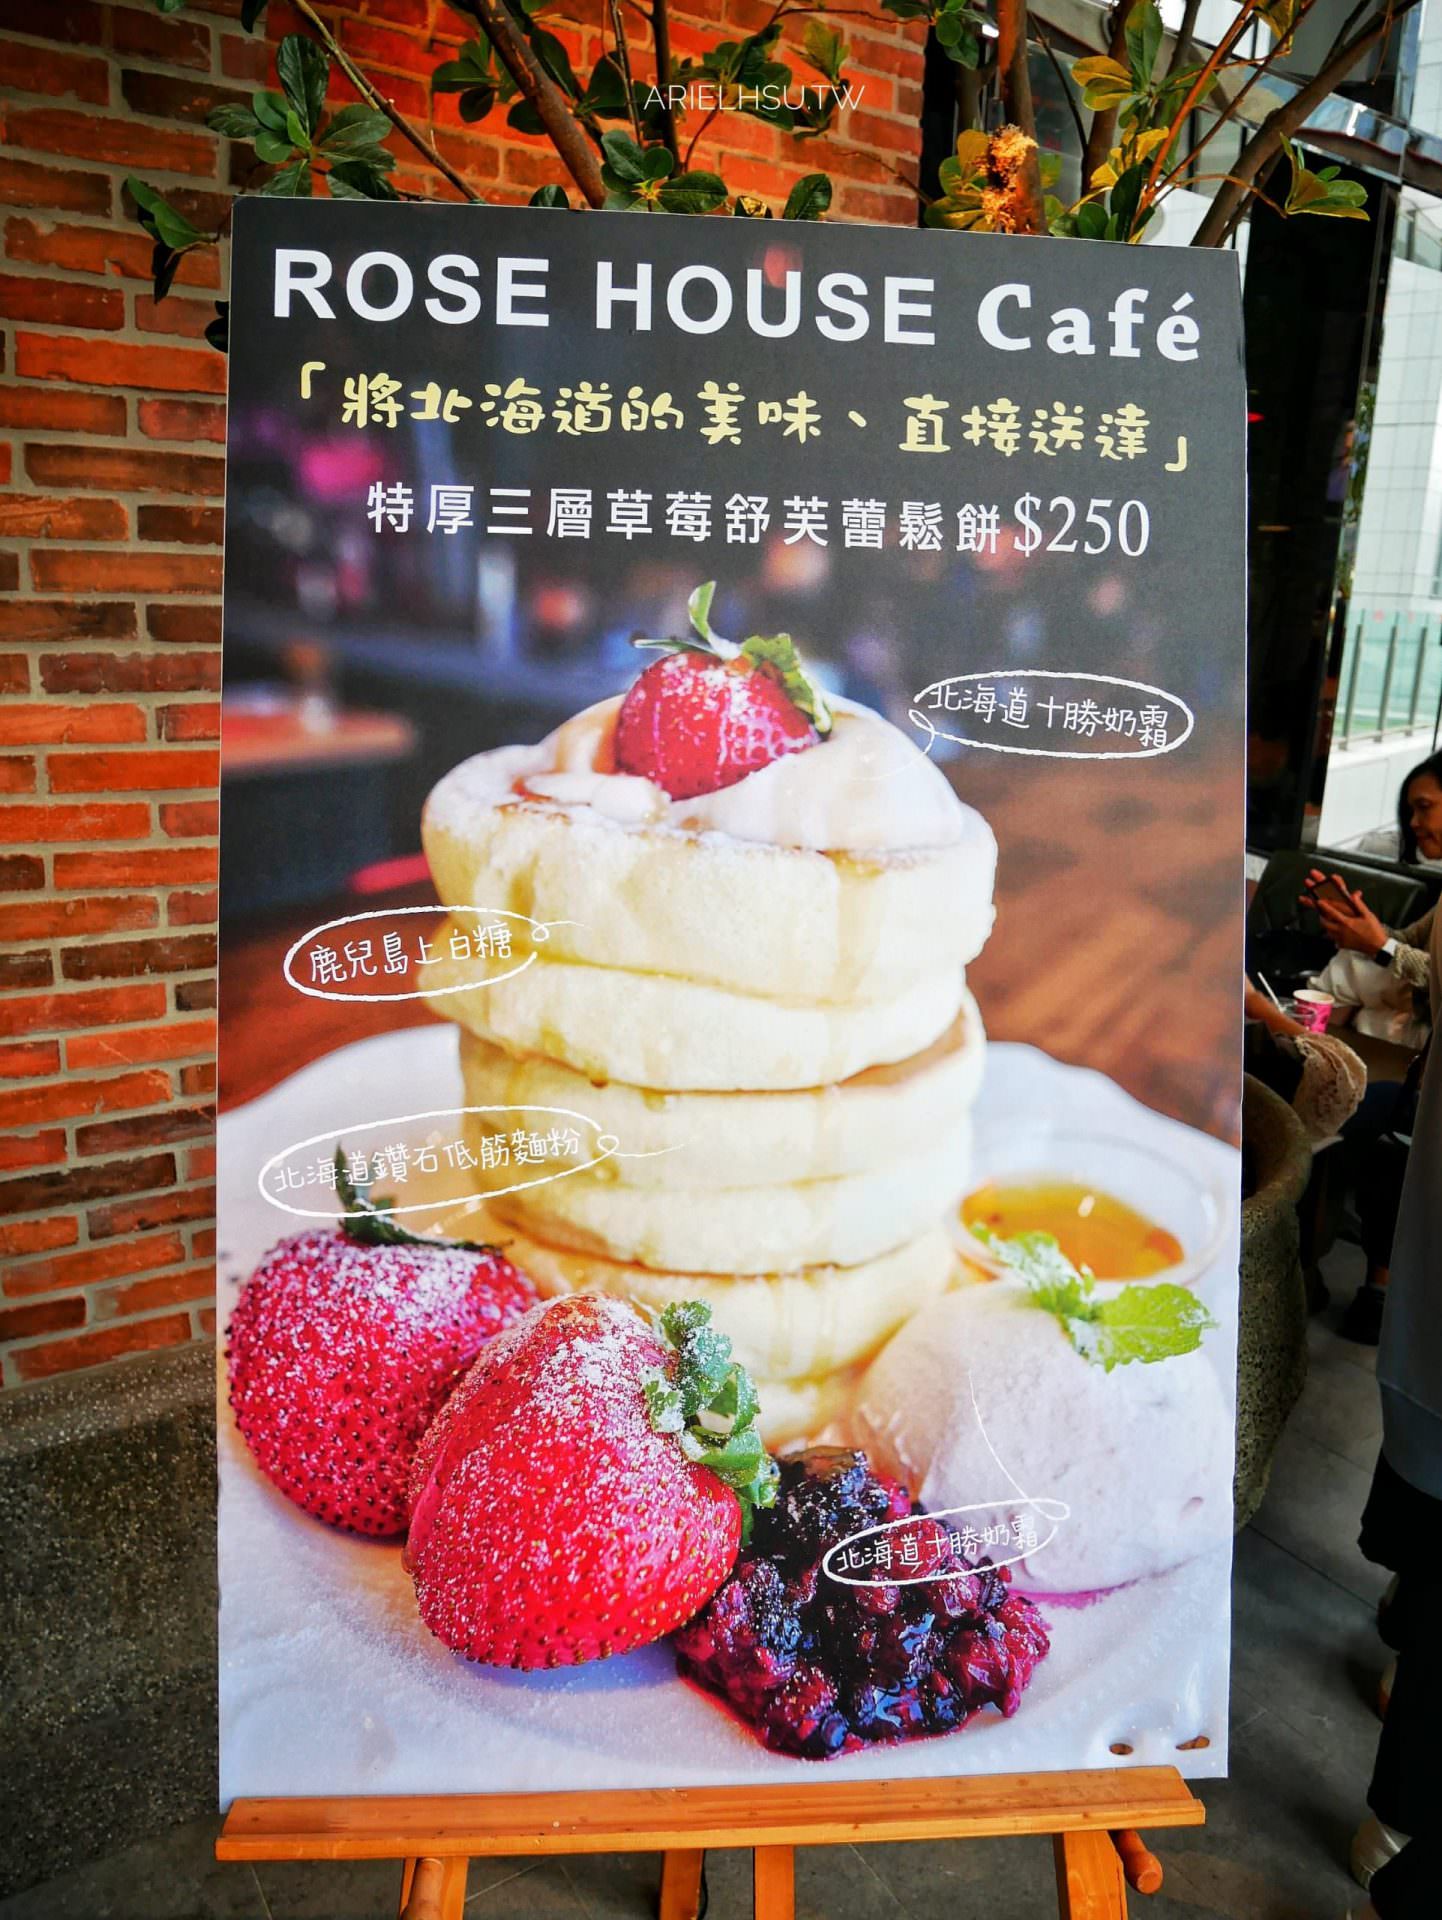 ROSE HOUSE Café